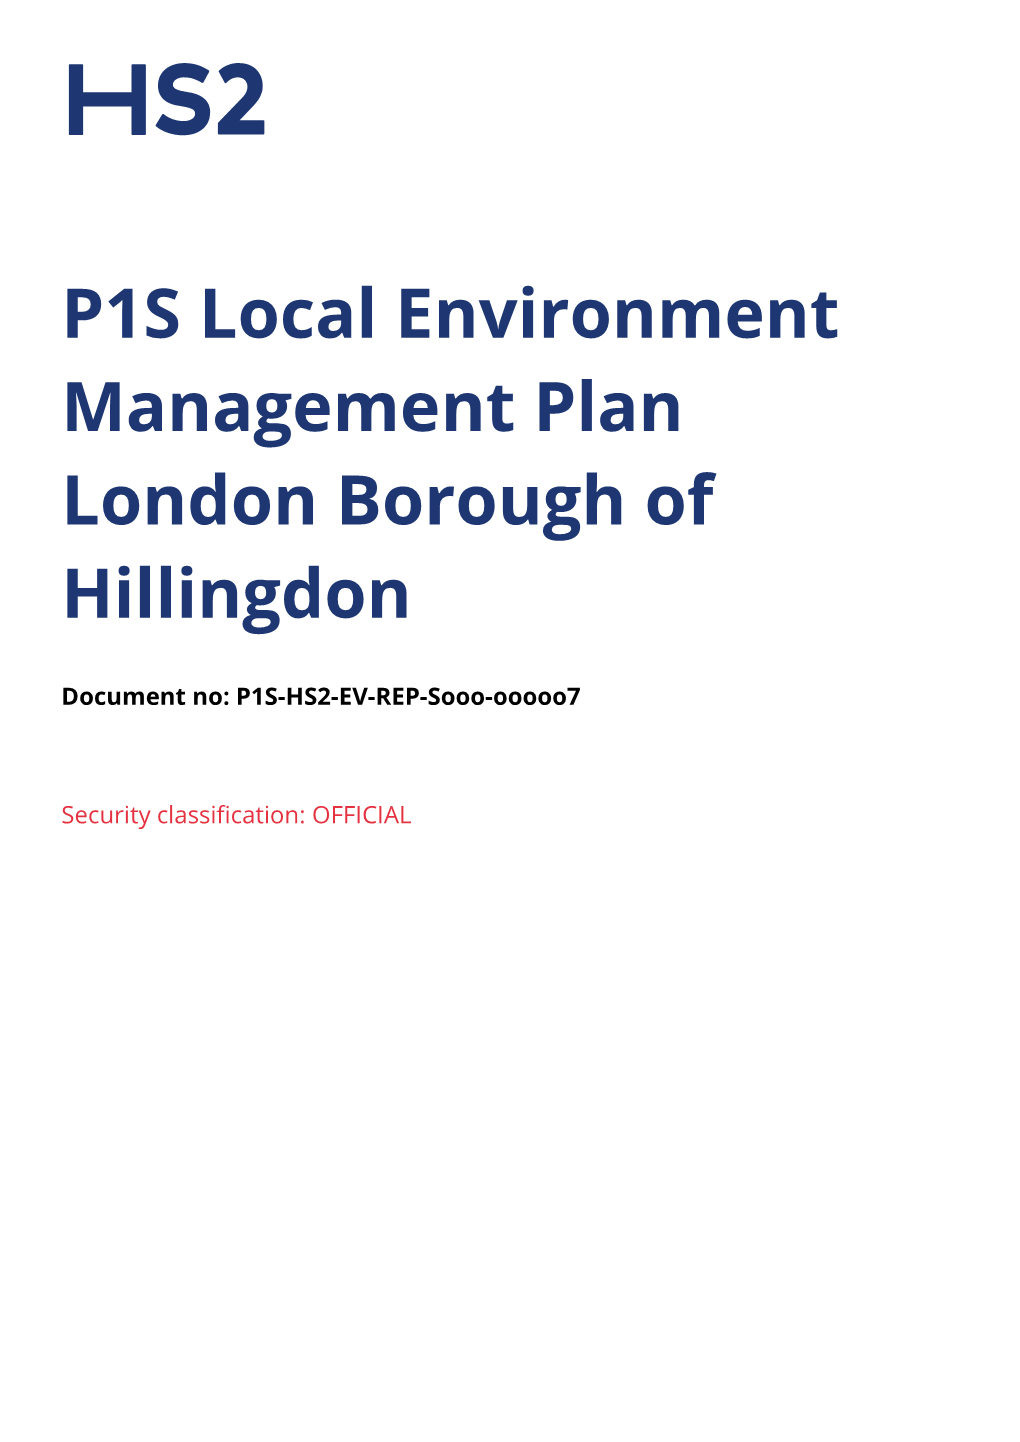 P1S Local Environment Management Plan London Borough of Hillingdon